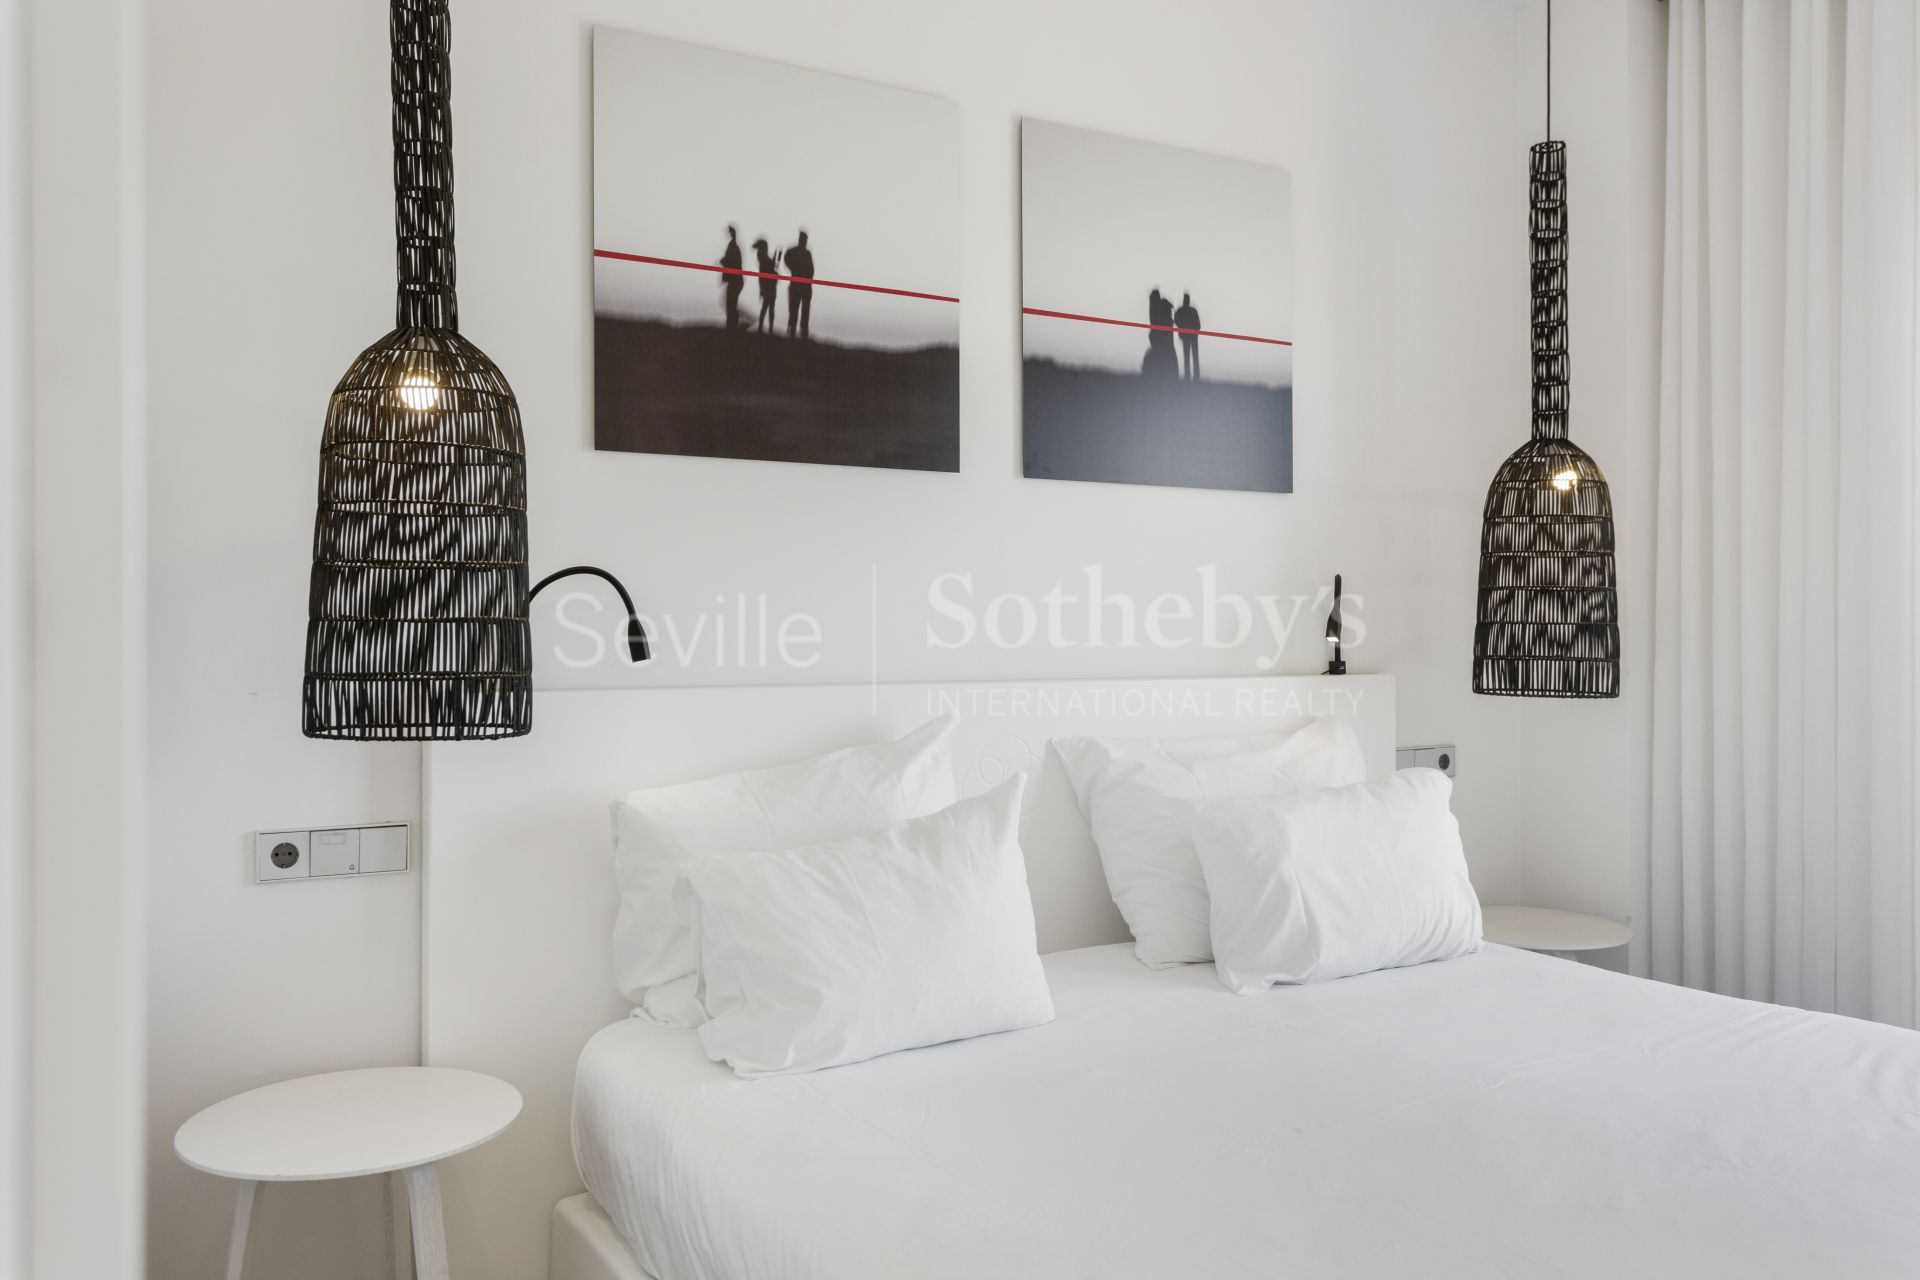 La Antilla - Islantilla - Villas y apartamentos en Urbanización privada tipo Resort con Golf en Islantilla